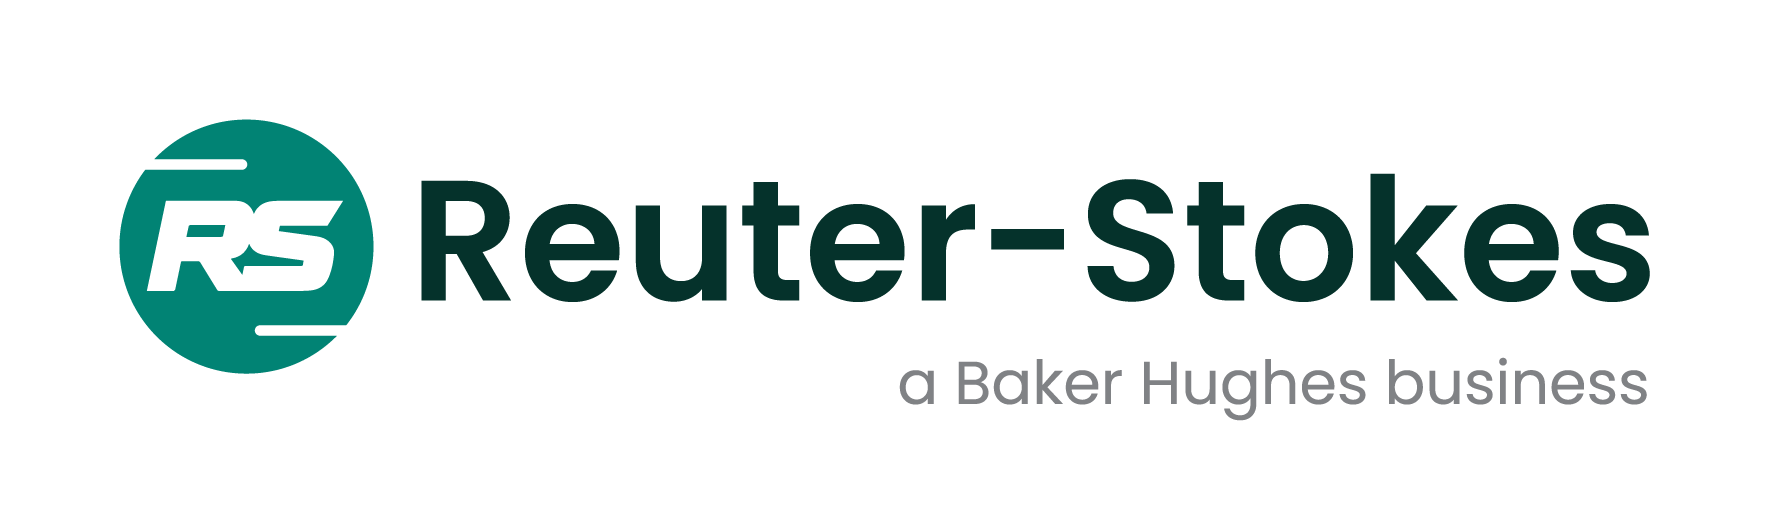 Reuter-Stokes, a Baker Hughes business Главная